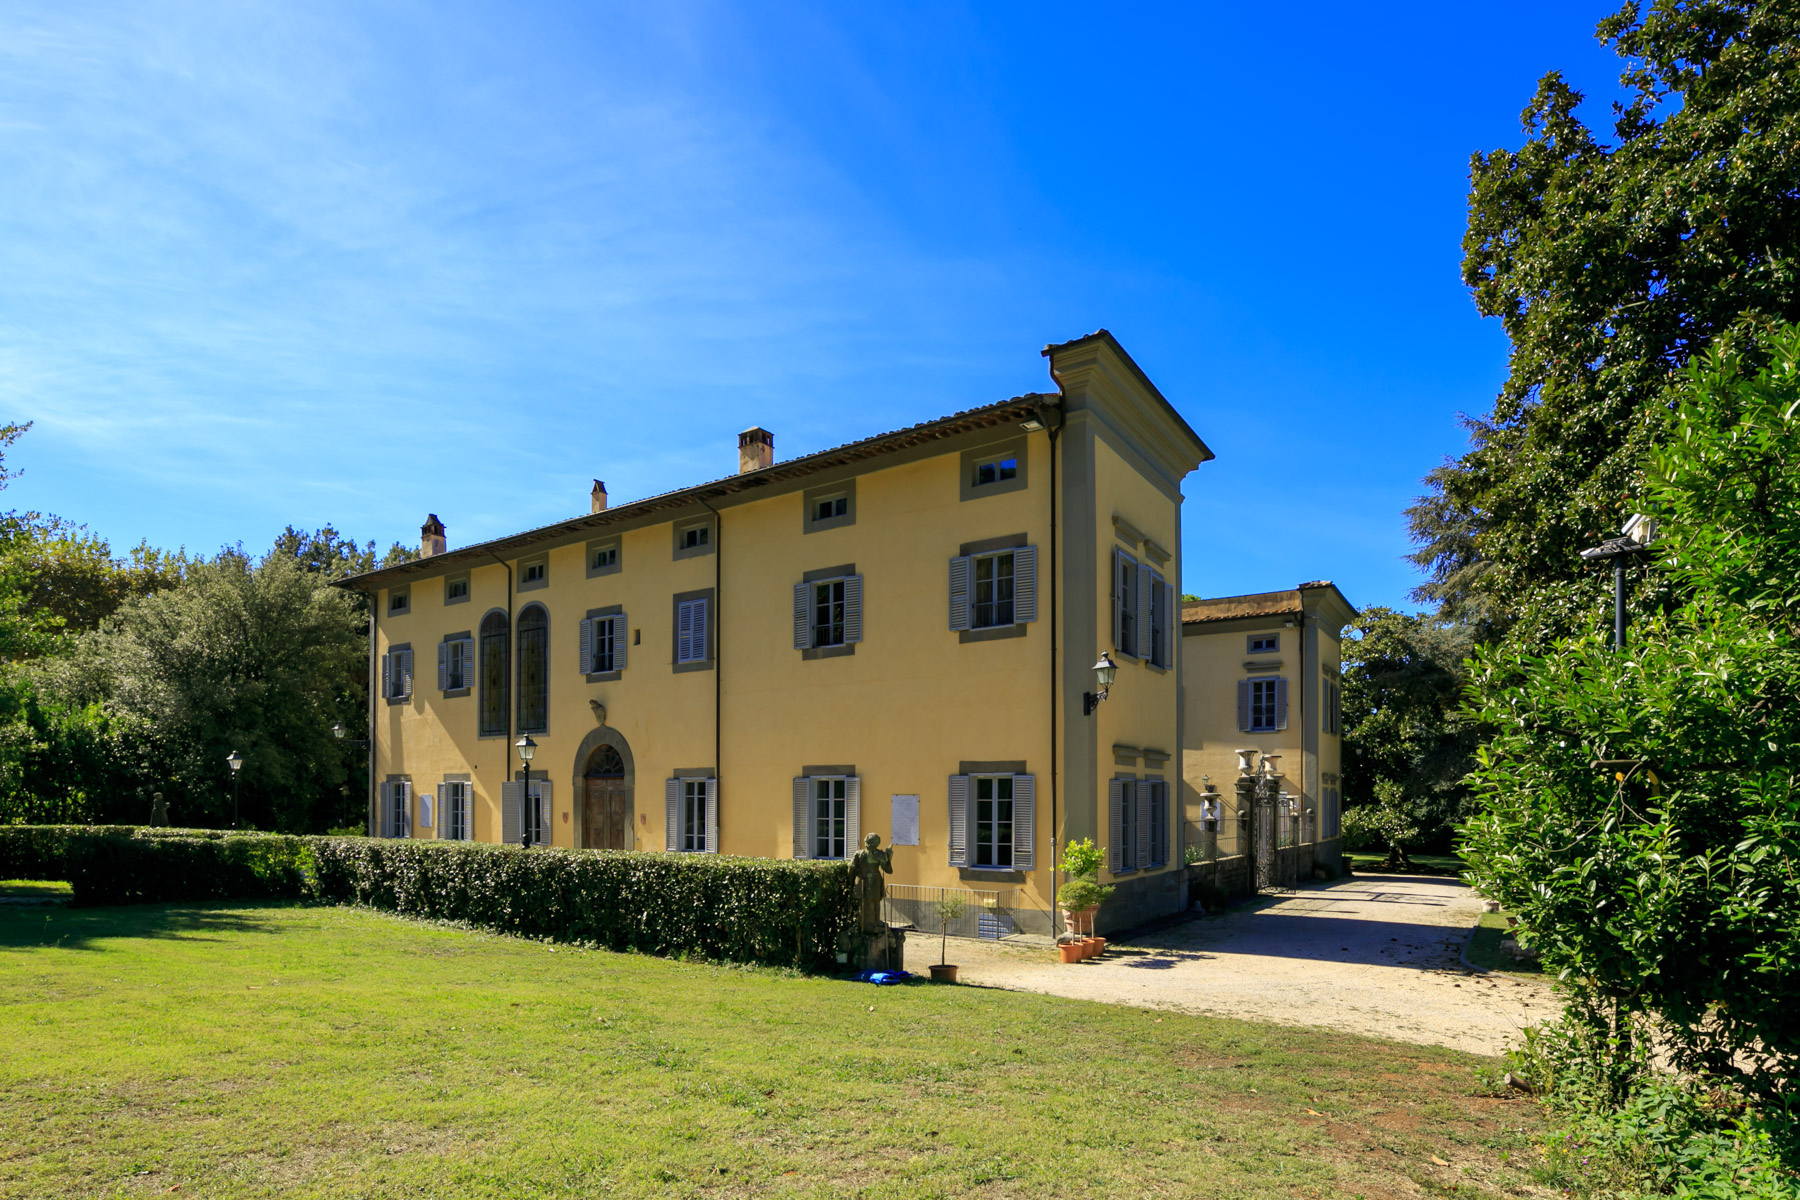 Villa in Vendita a San Giuliano Terme: 5 locali, 2755 mq - Foto 3